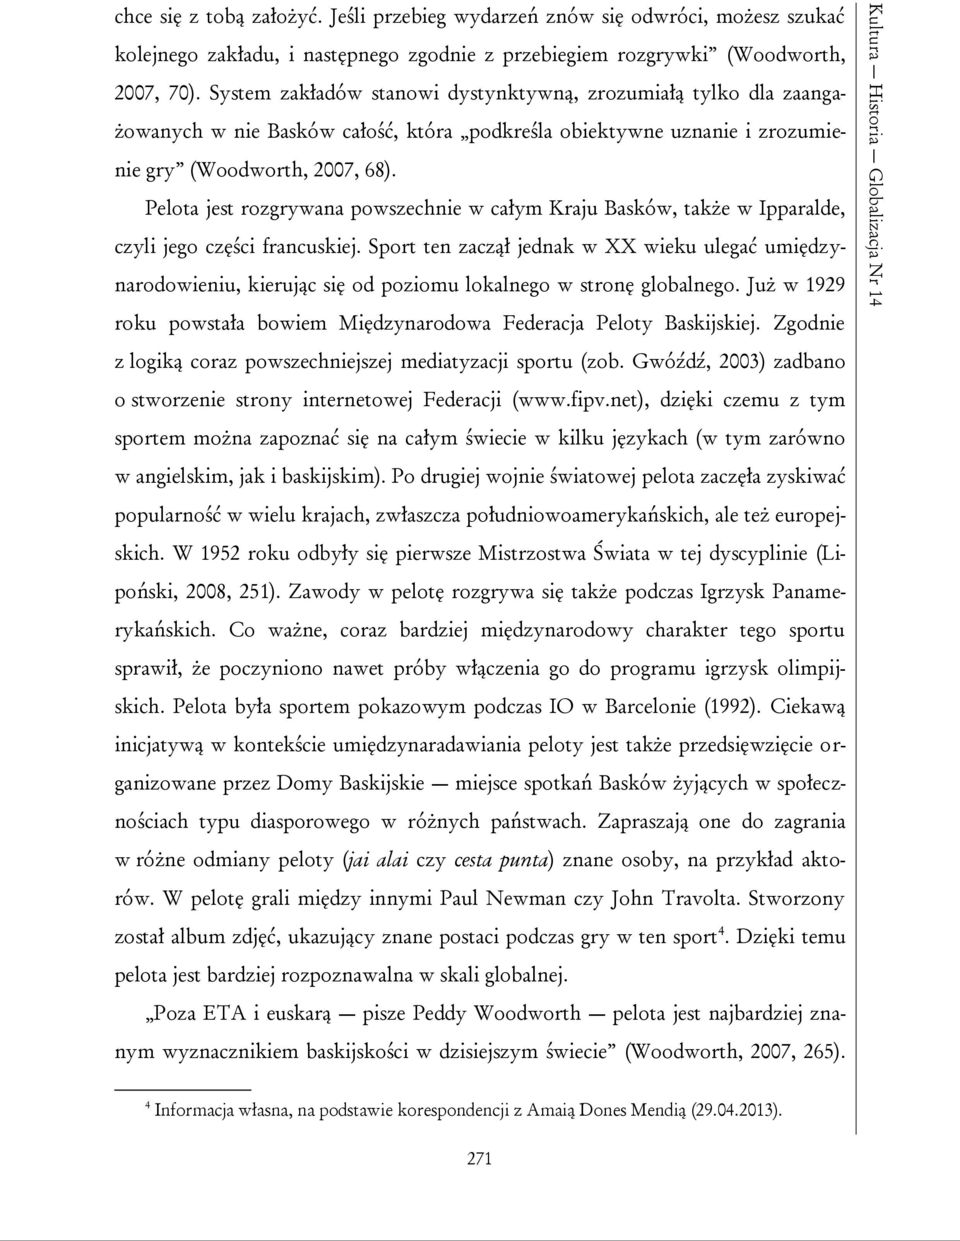 System zakładów stanowi dystynktywną, zrozumiałą tylko dla zaangażowanych w nie Basków całość, która podkreśla obiektywne uznanie i zrozumienie gry (Woodworth, 2007, 68).